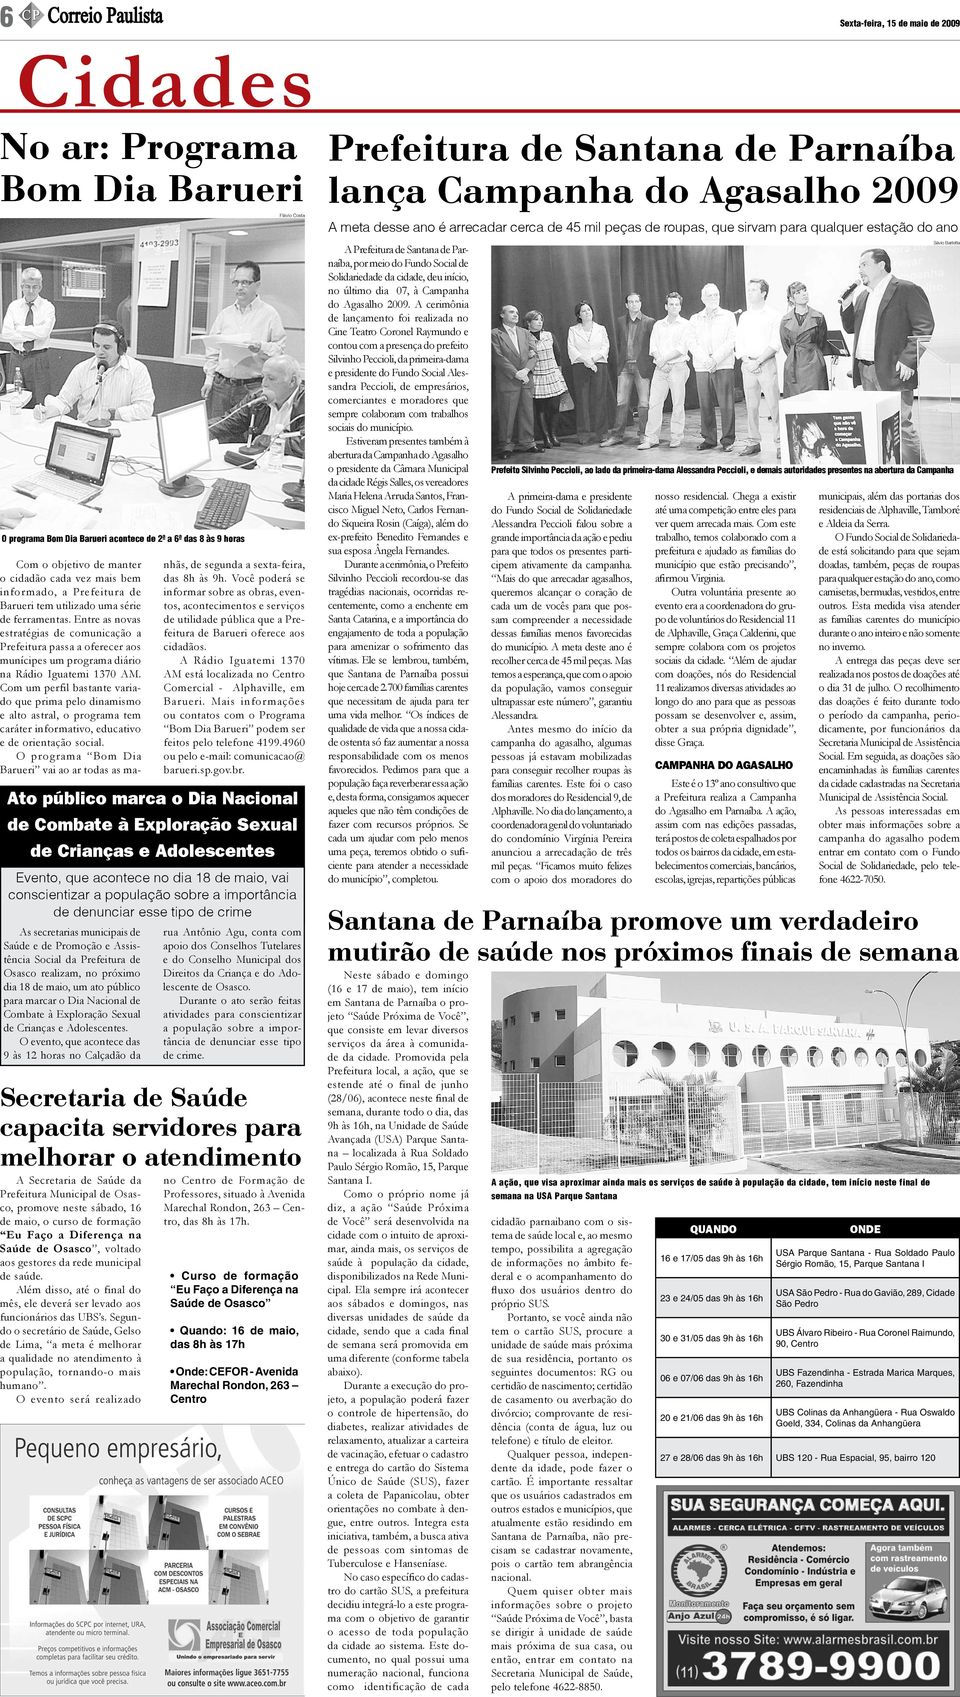 Entre as novas estratégias de comunicação a Prefeitura passa a oferecer aos munícipes um programa diário na Rádio Iguatemi 1370 AM.